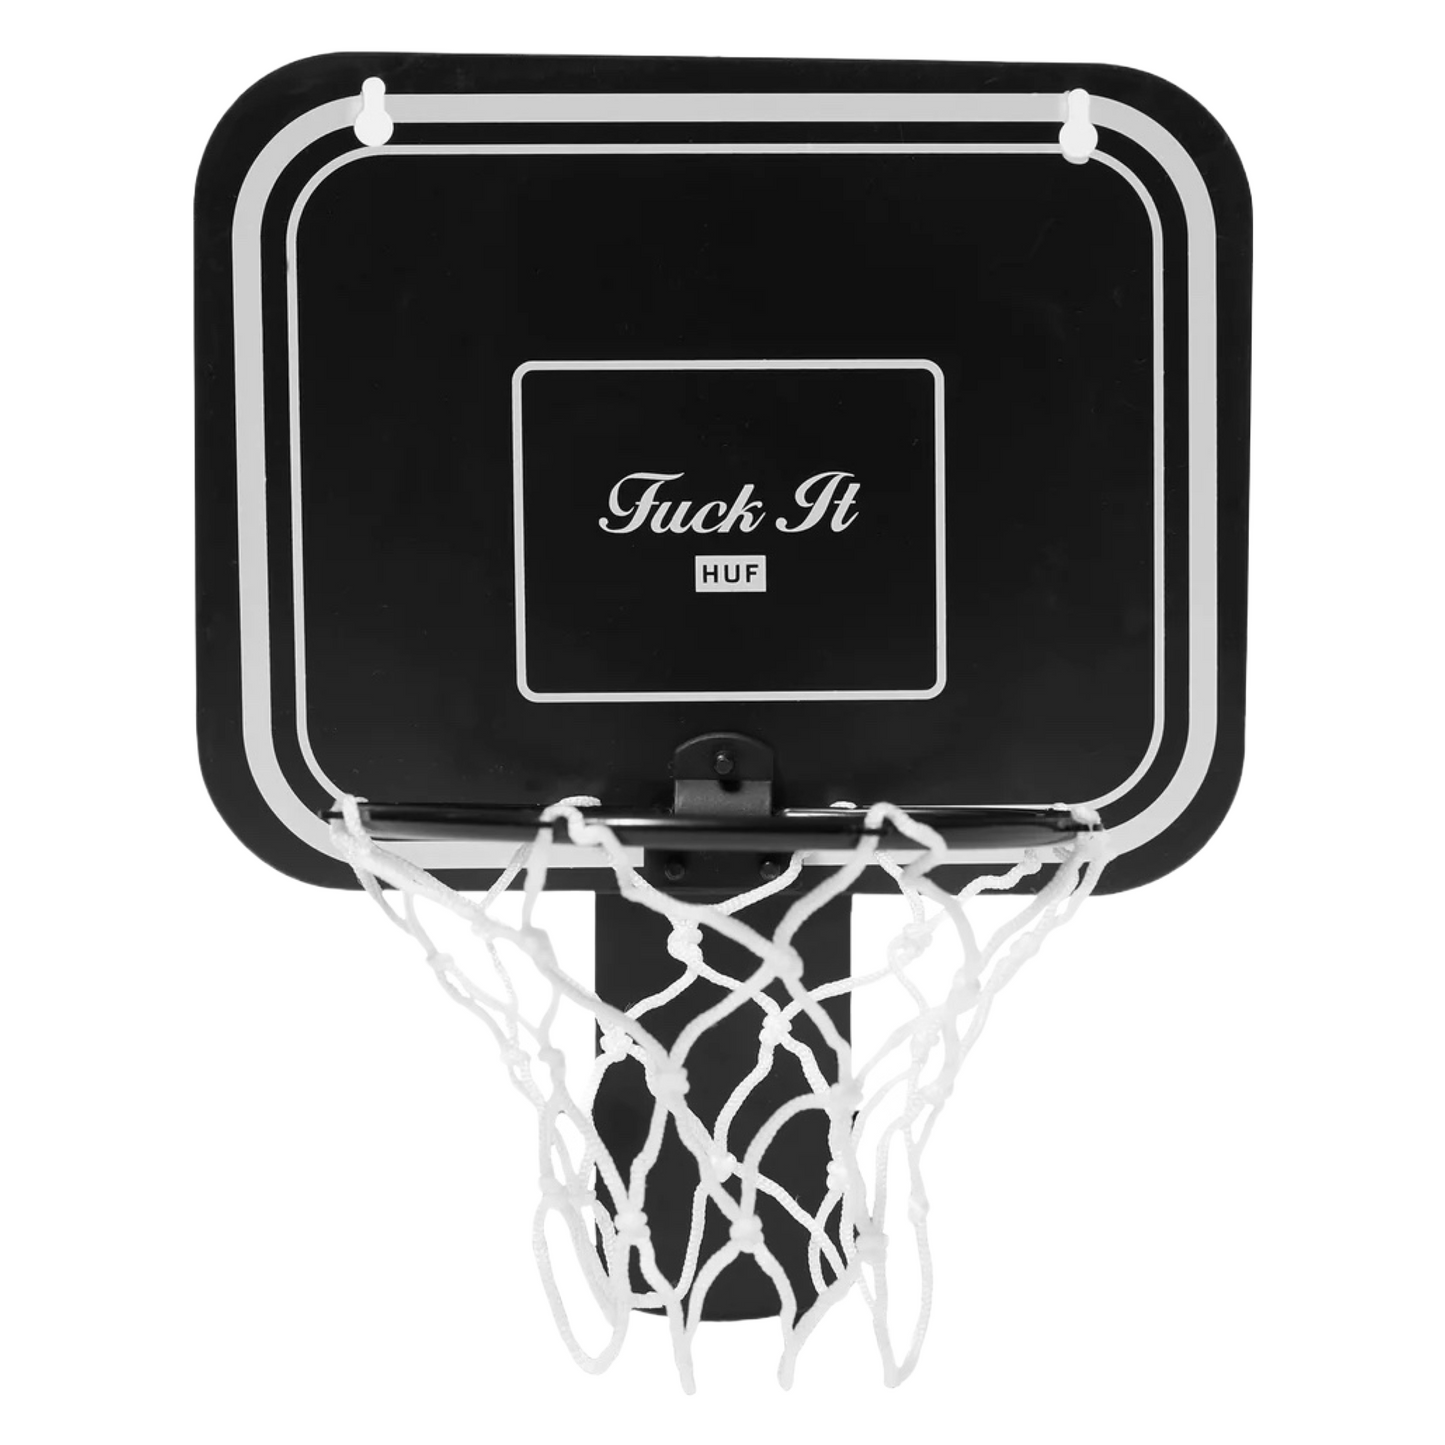 HUF - ‘Fuck It’ Waste Basket Hoop